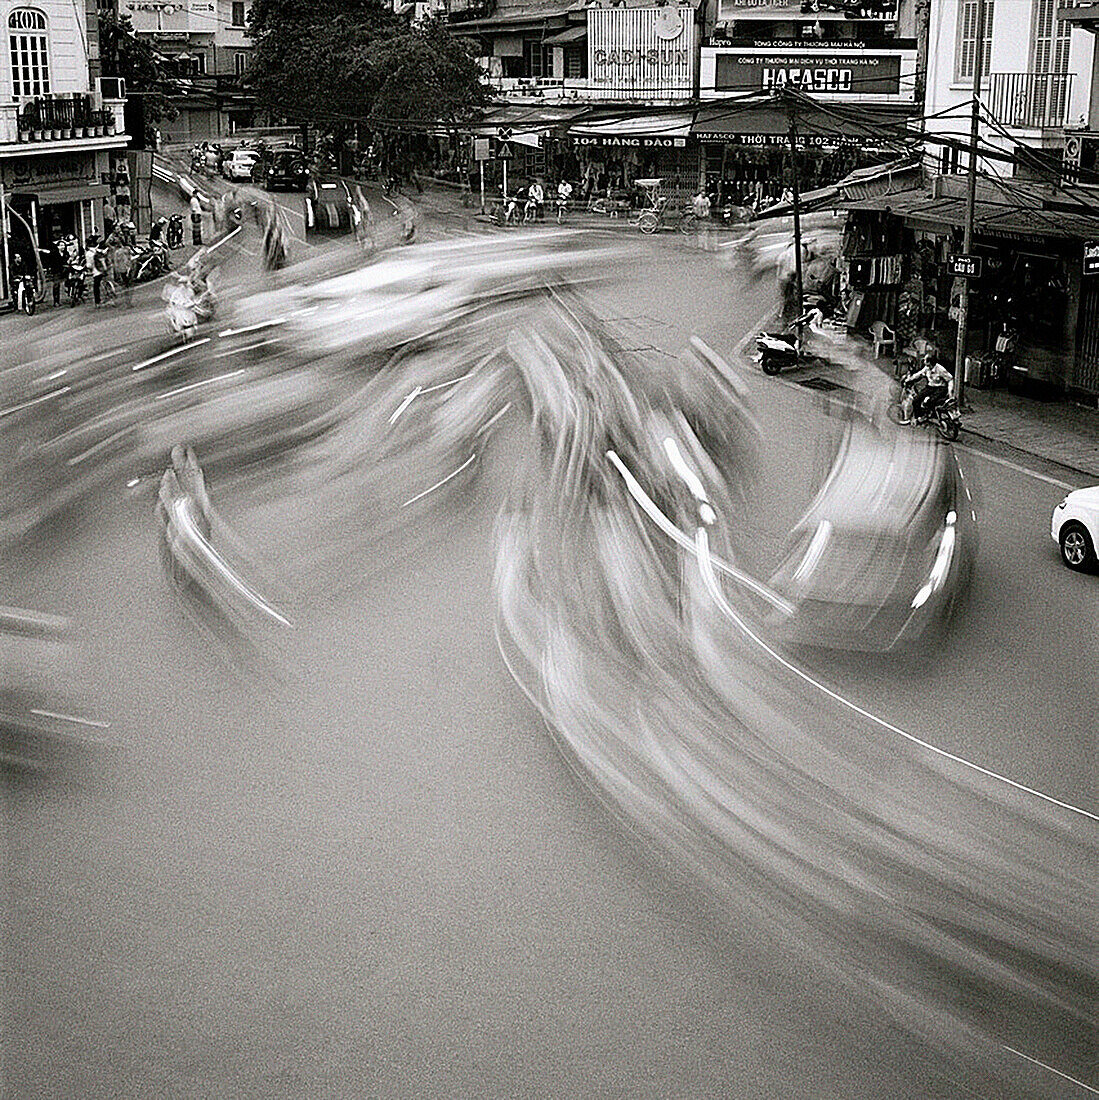 A street scene in Hanoi in Vietnam